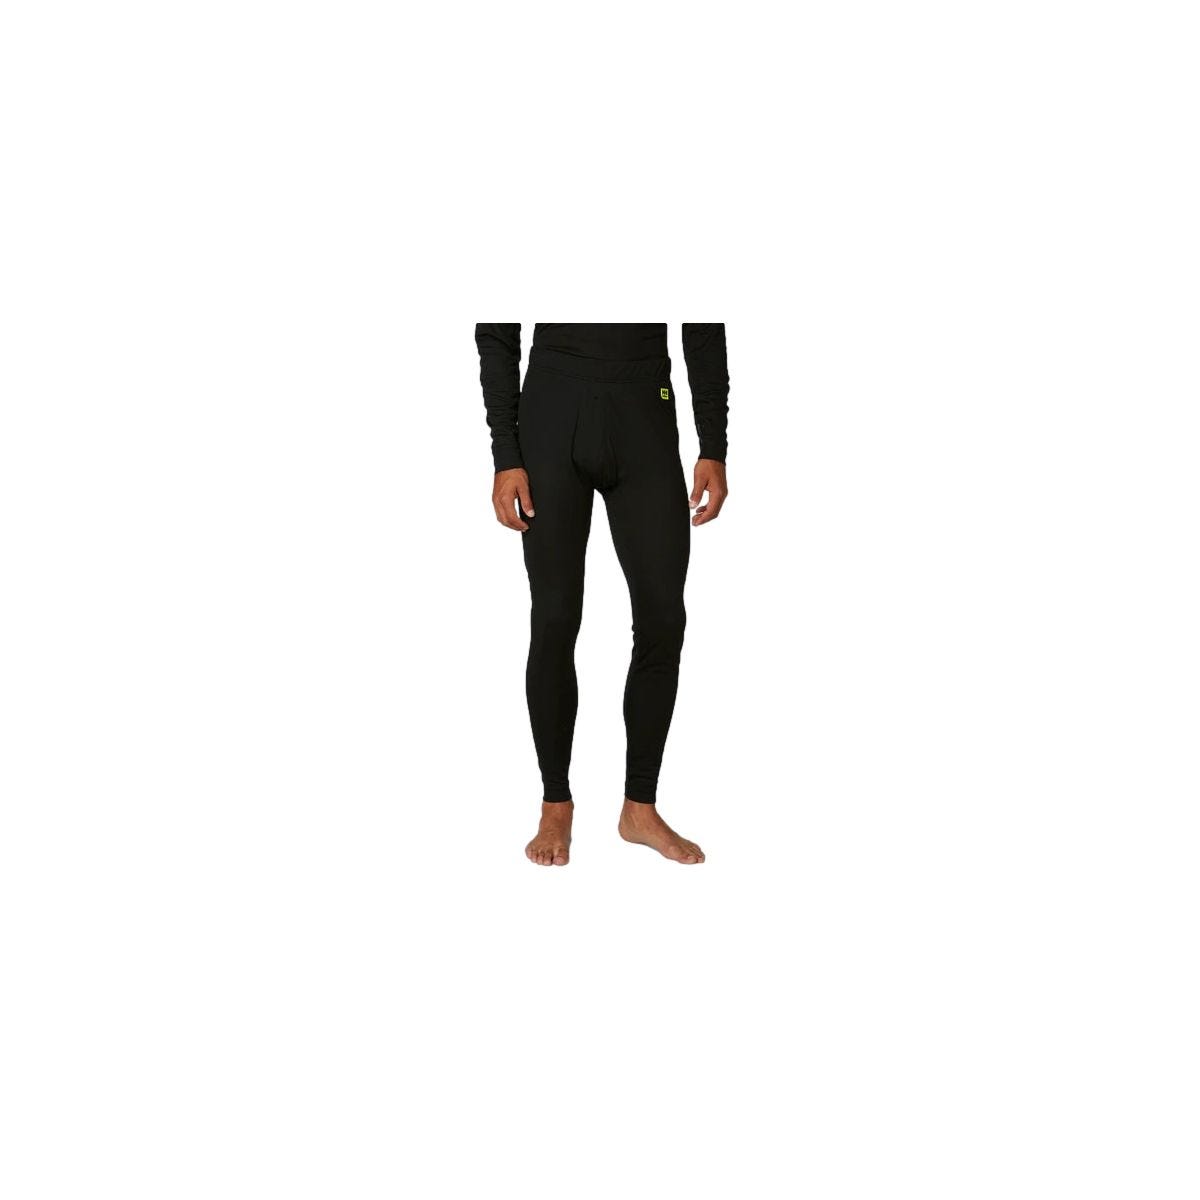 Pantalon sous-vêtement technique Lifa Noir - Helly Hansen - Taille XL 2